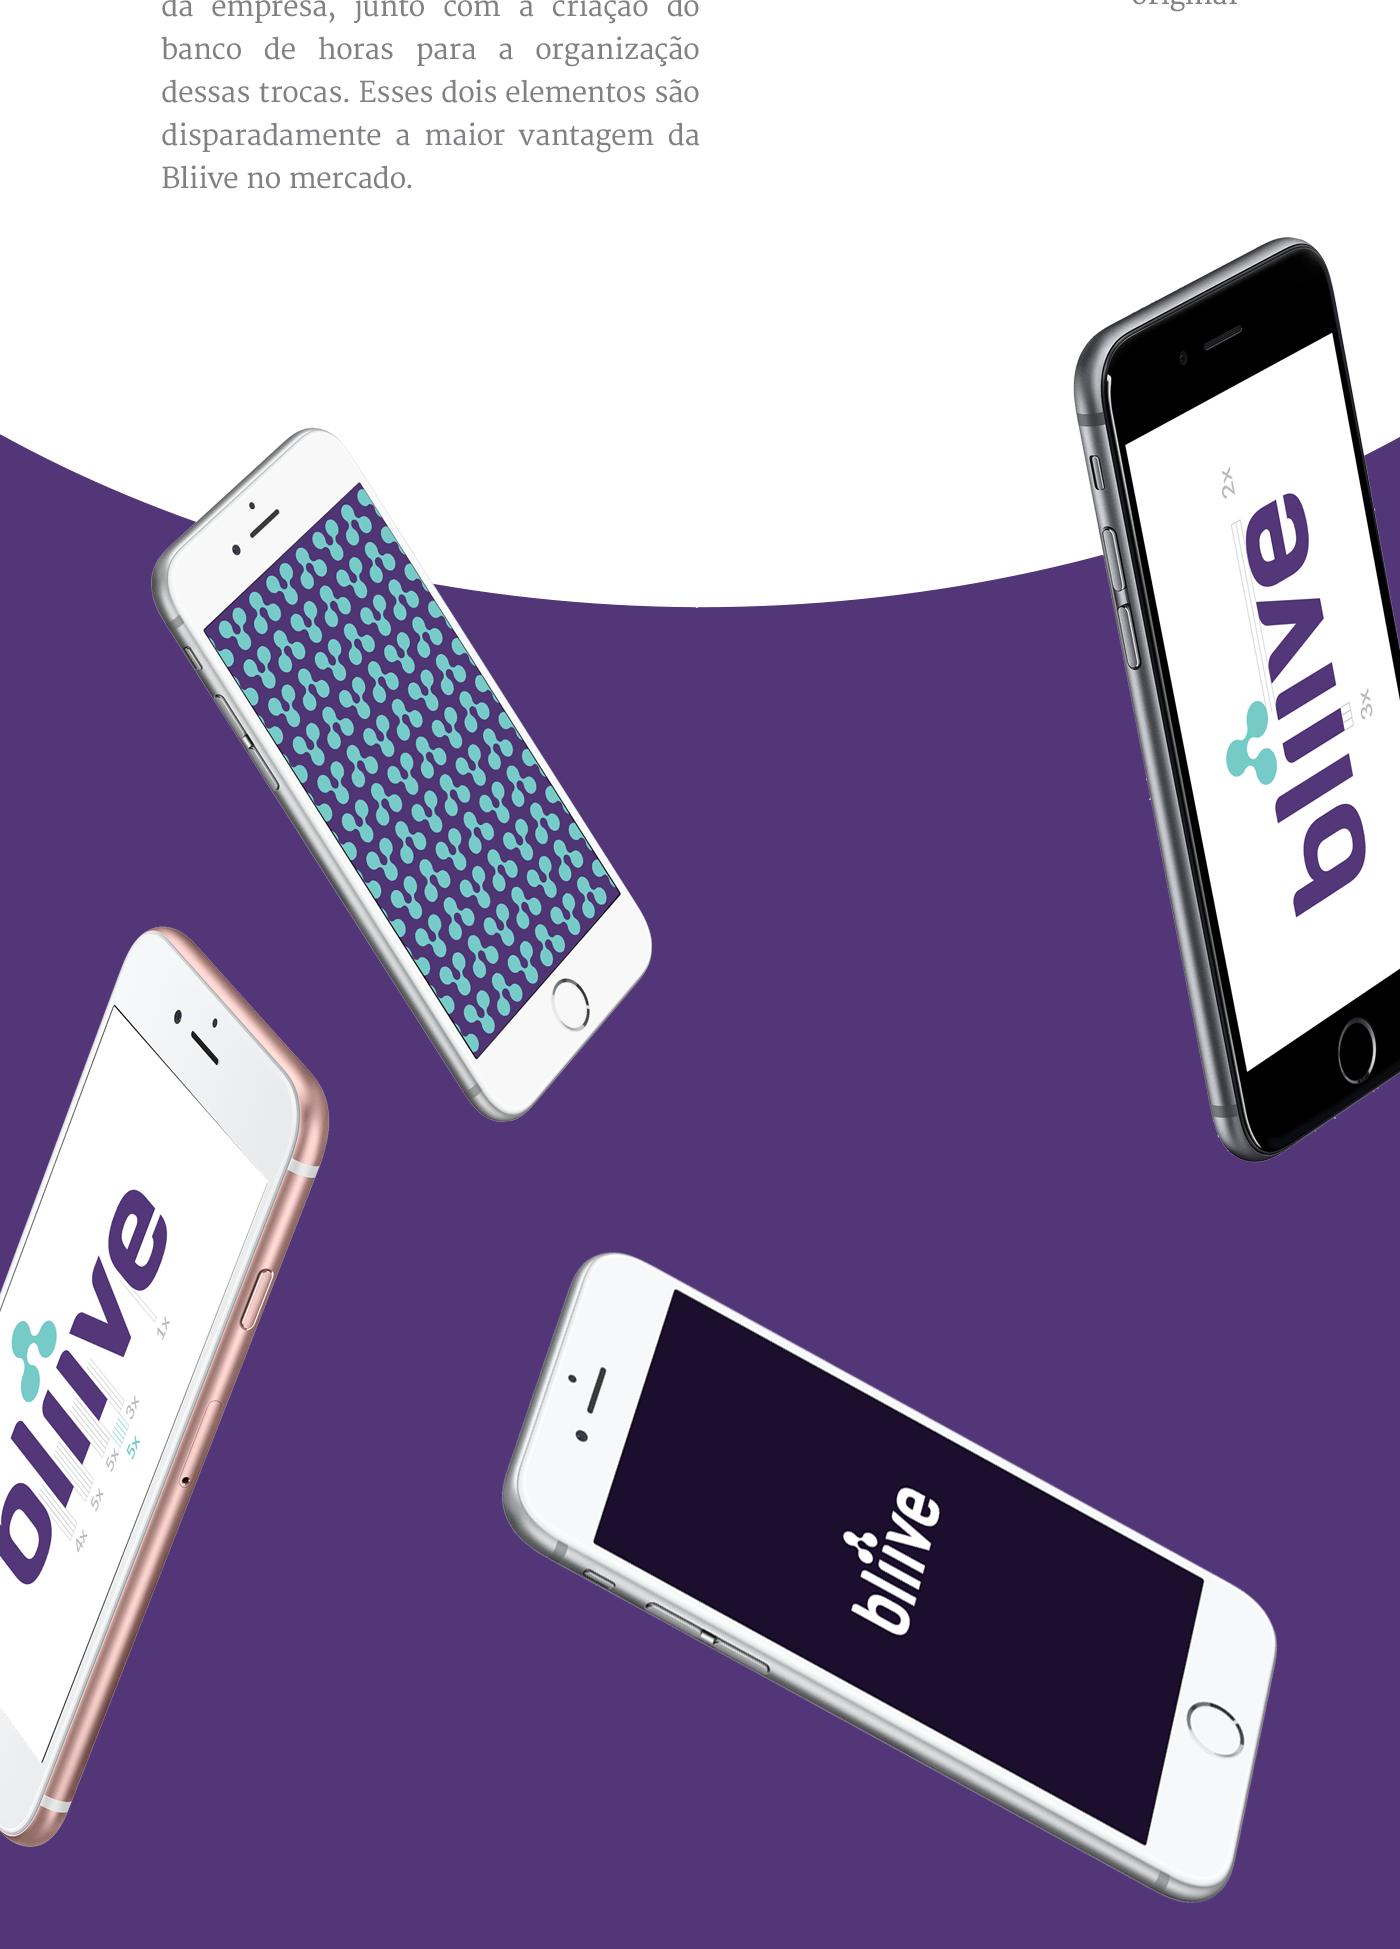 bliive social network time purple Brasil bahia green Rebrand portfolio logo identidade